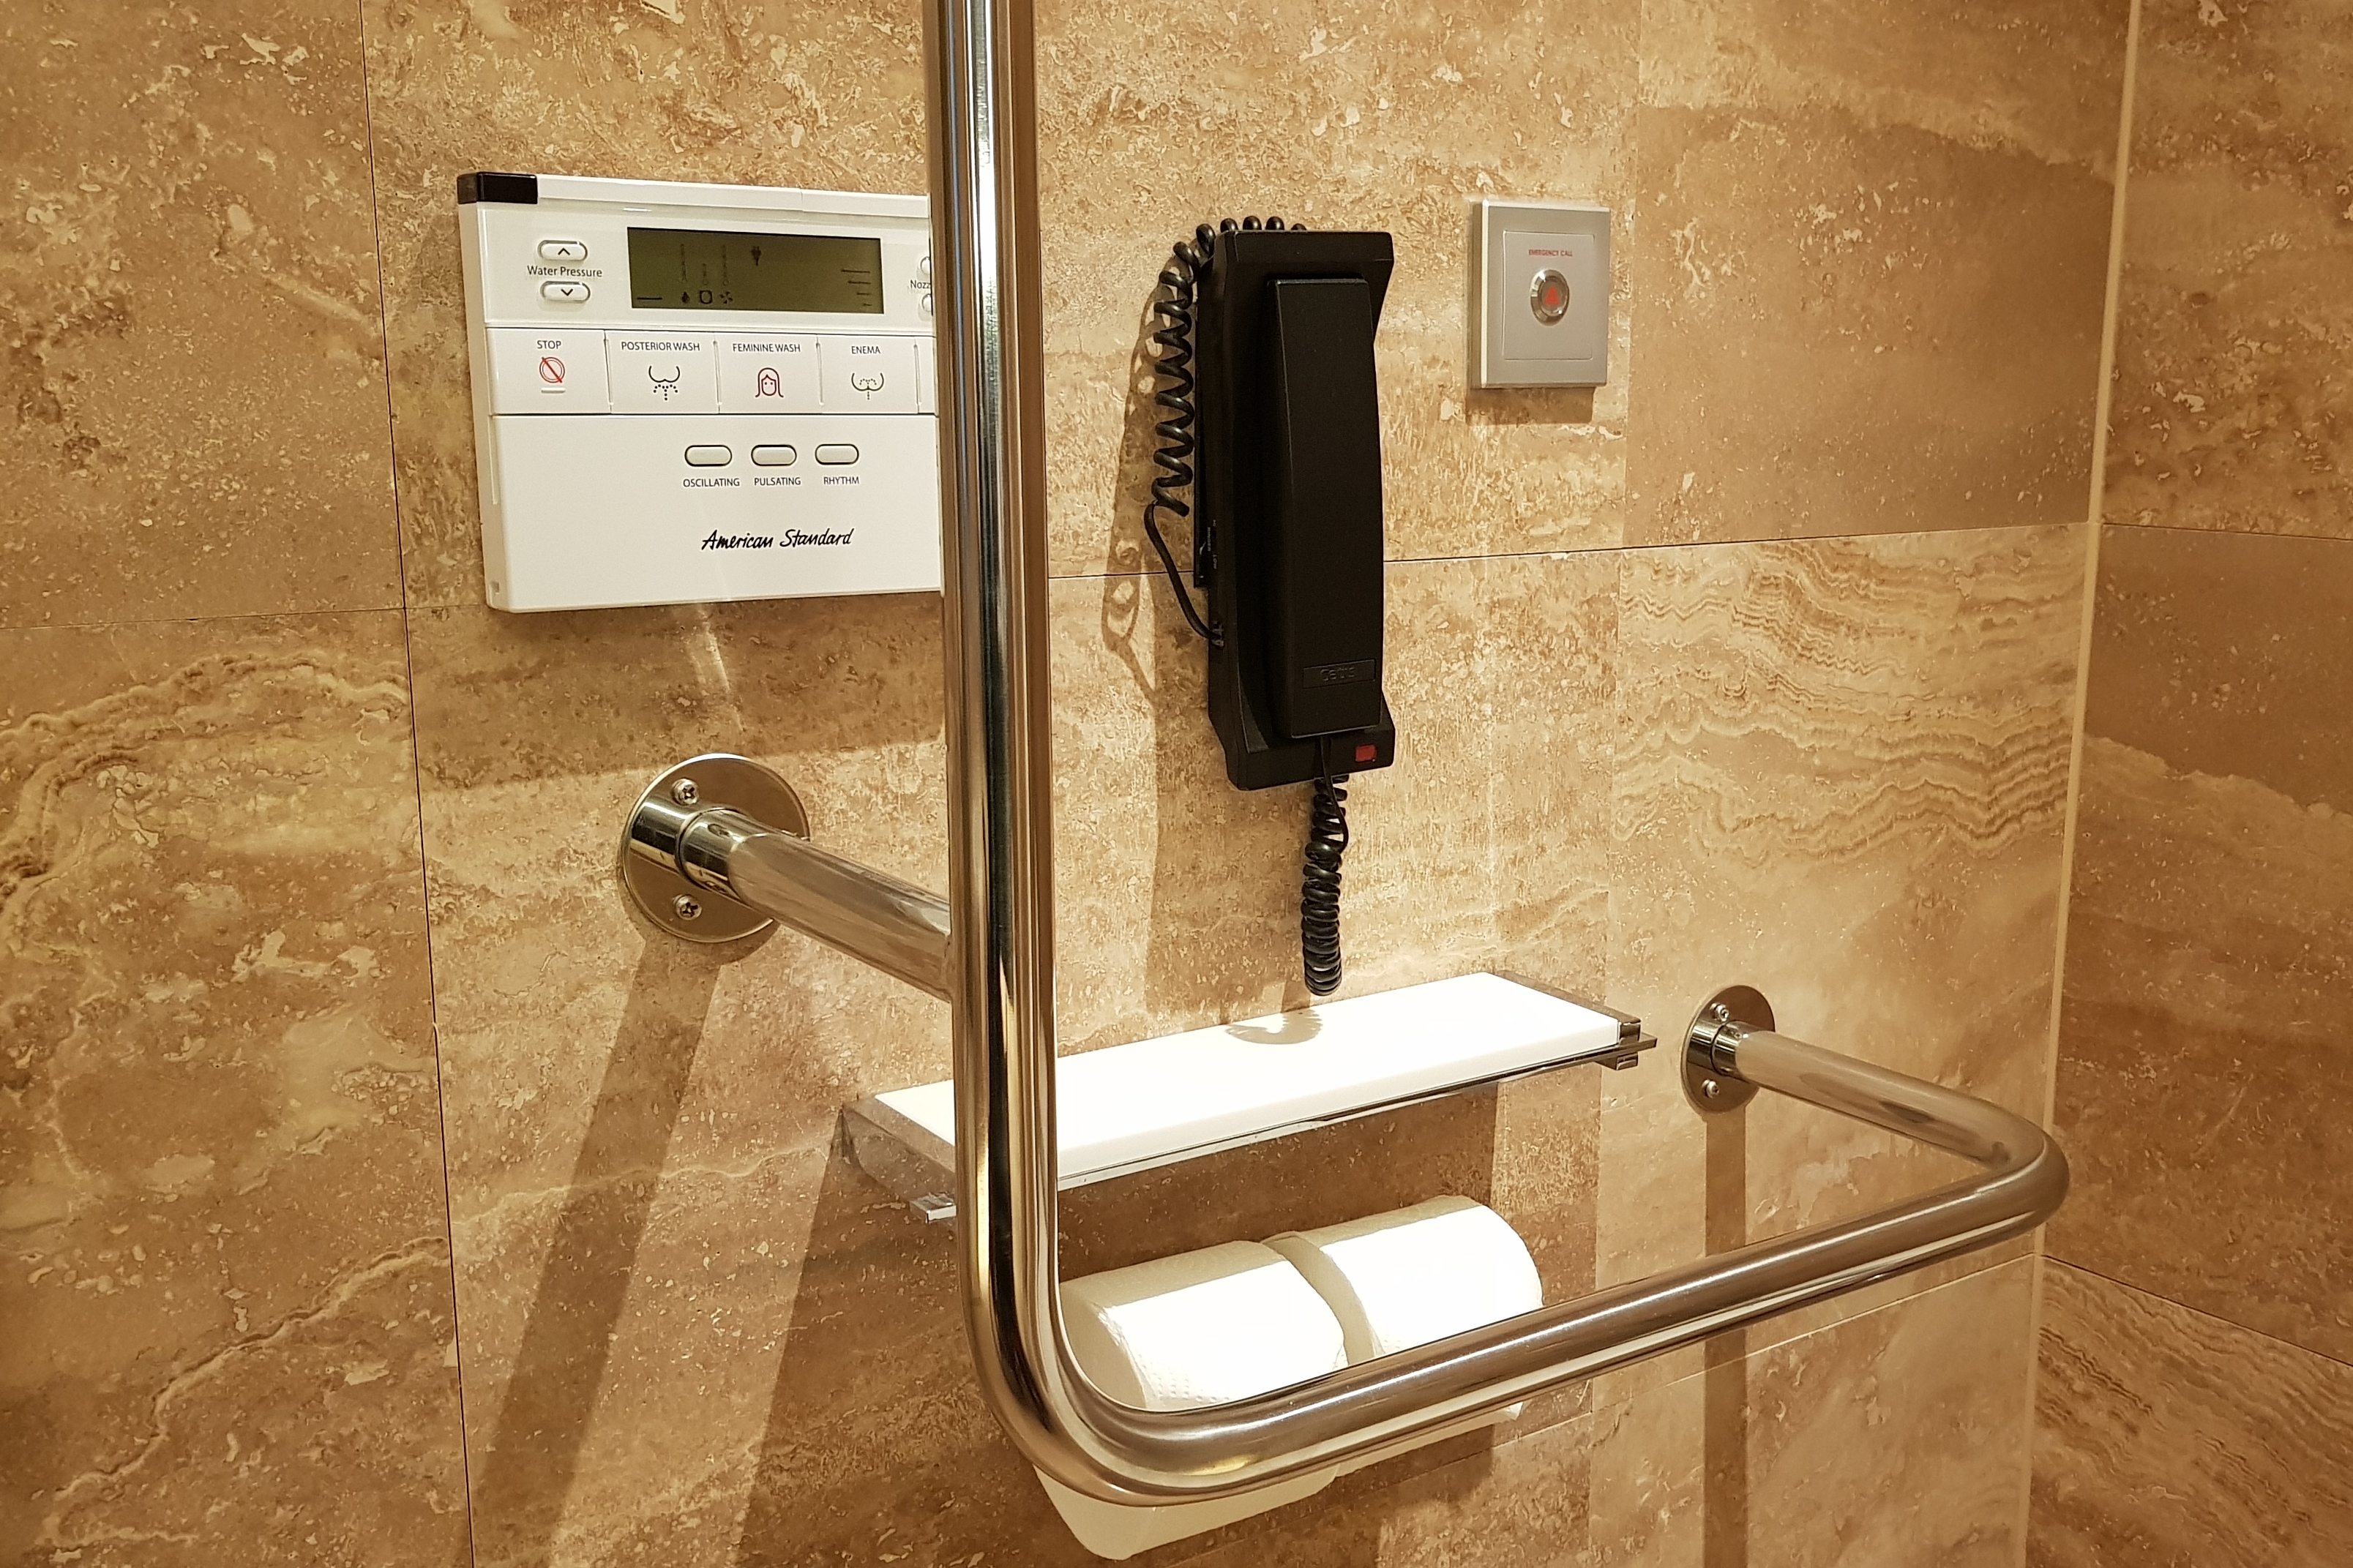 객실 화장실0 : 객실 화장실에 설치된 비상 전화